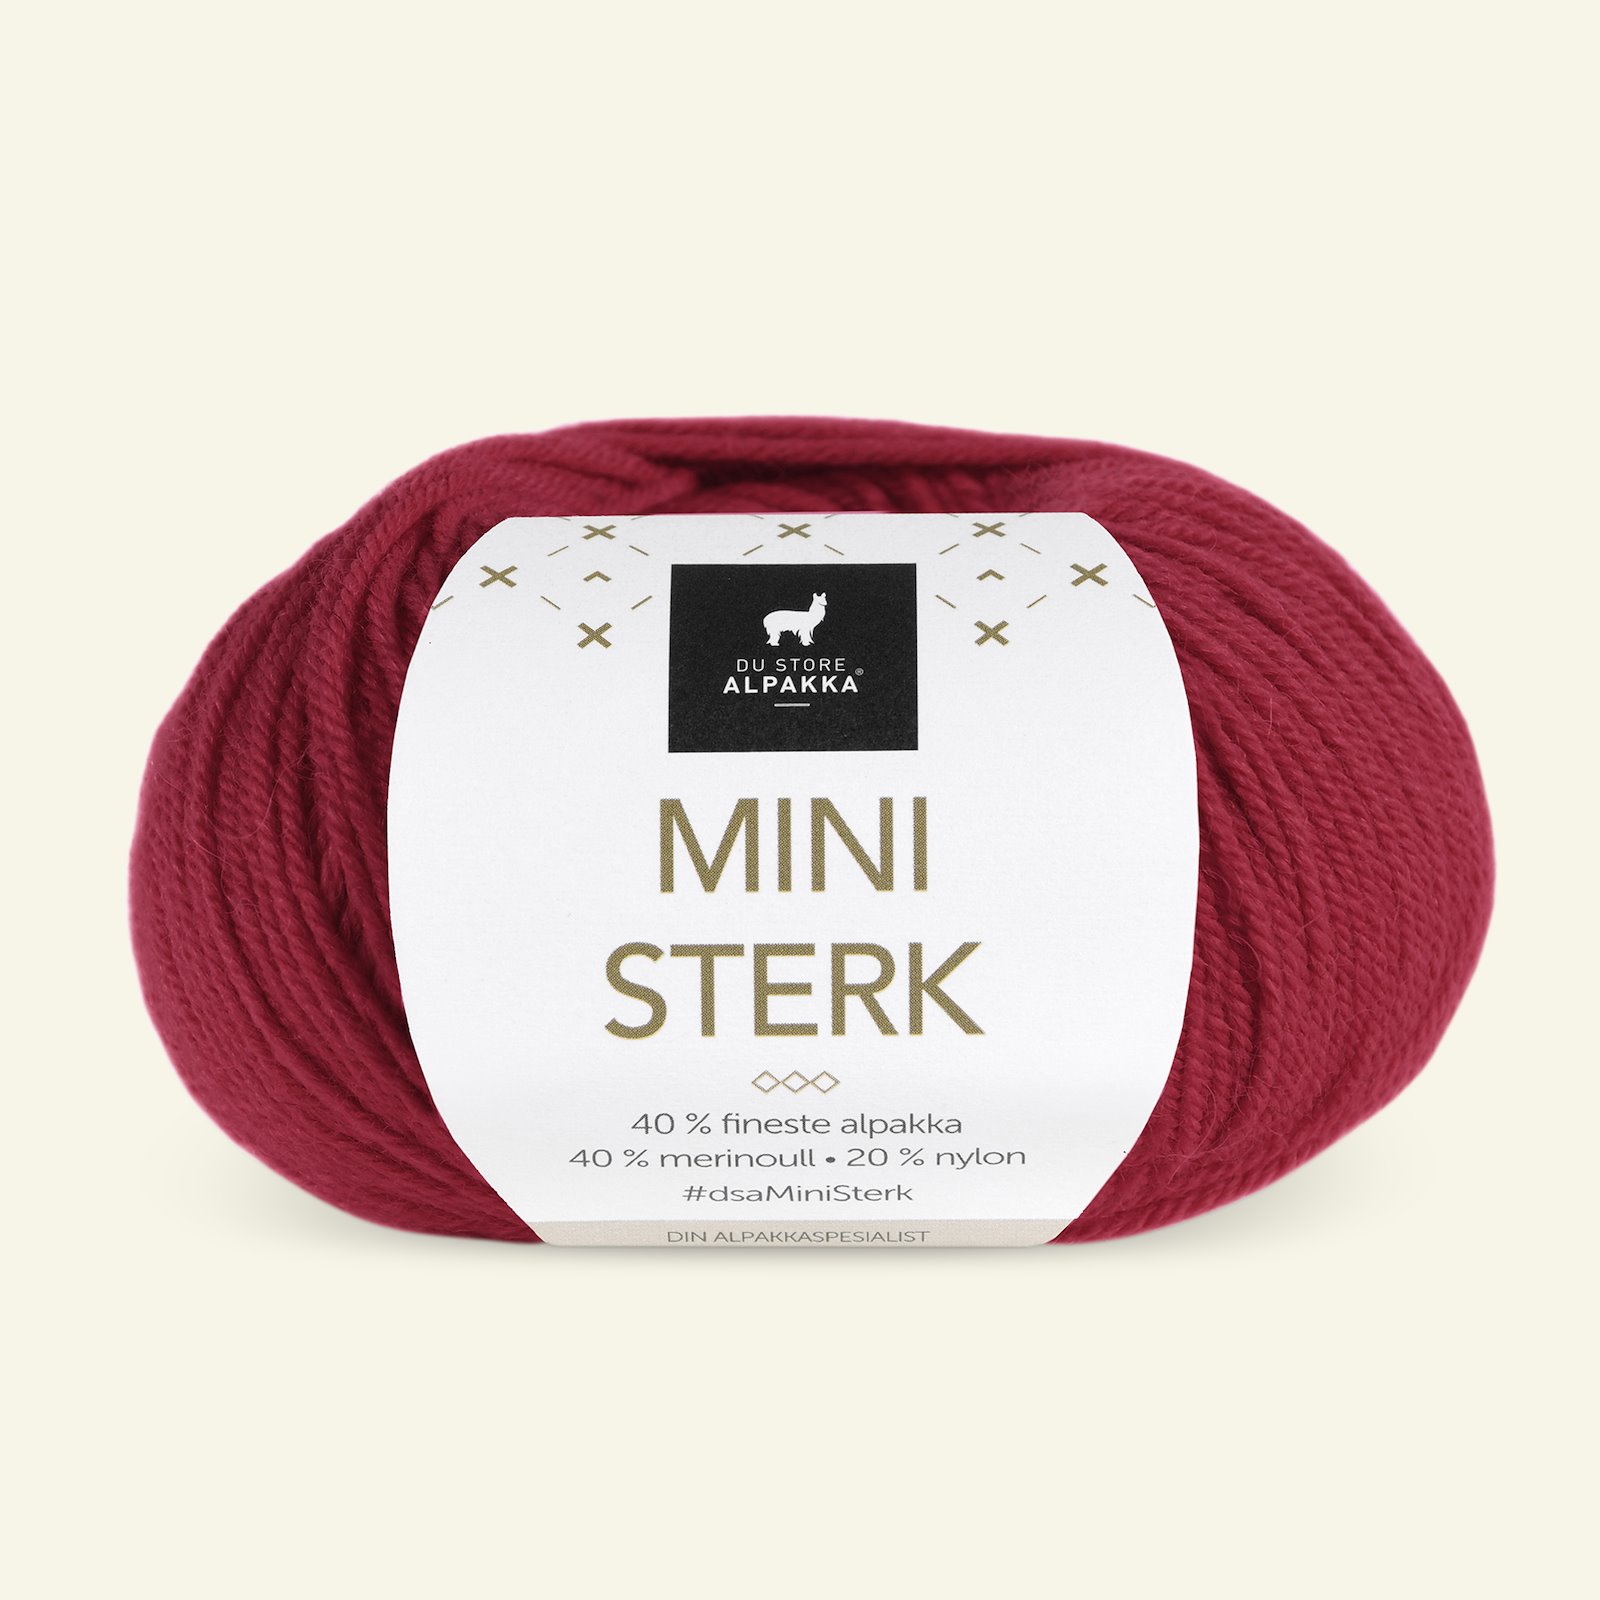 Du Store Alpakka,alpaca merino mixed yarn "Mini Sterk", dark red (819) 90000625_pack